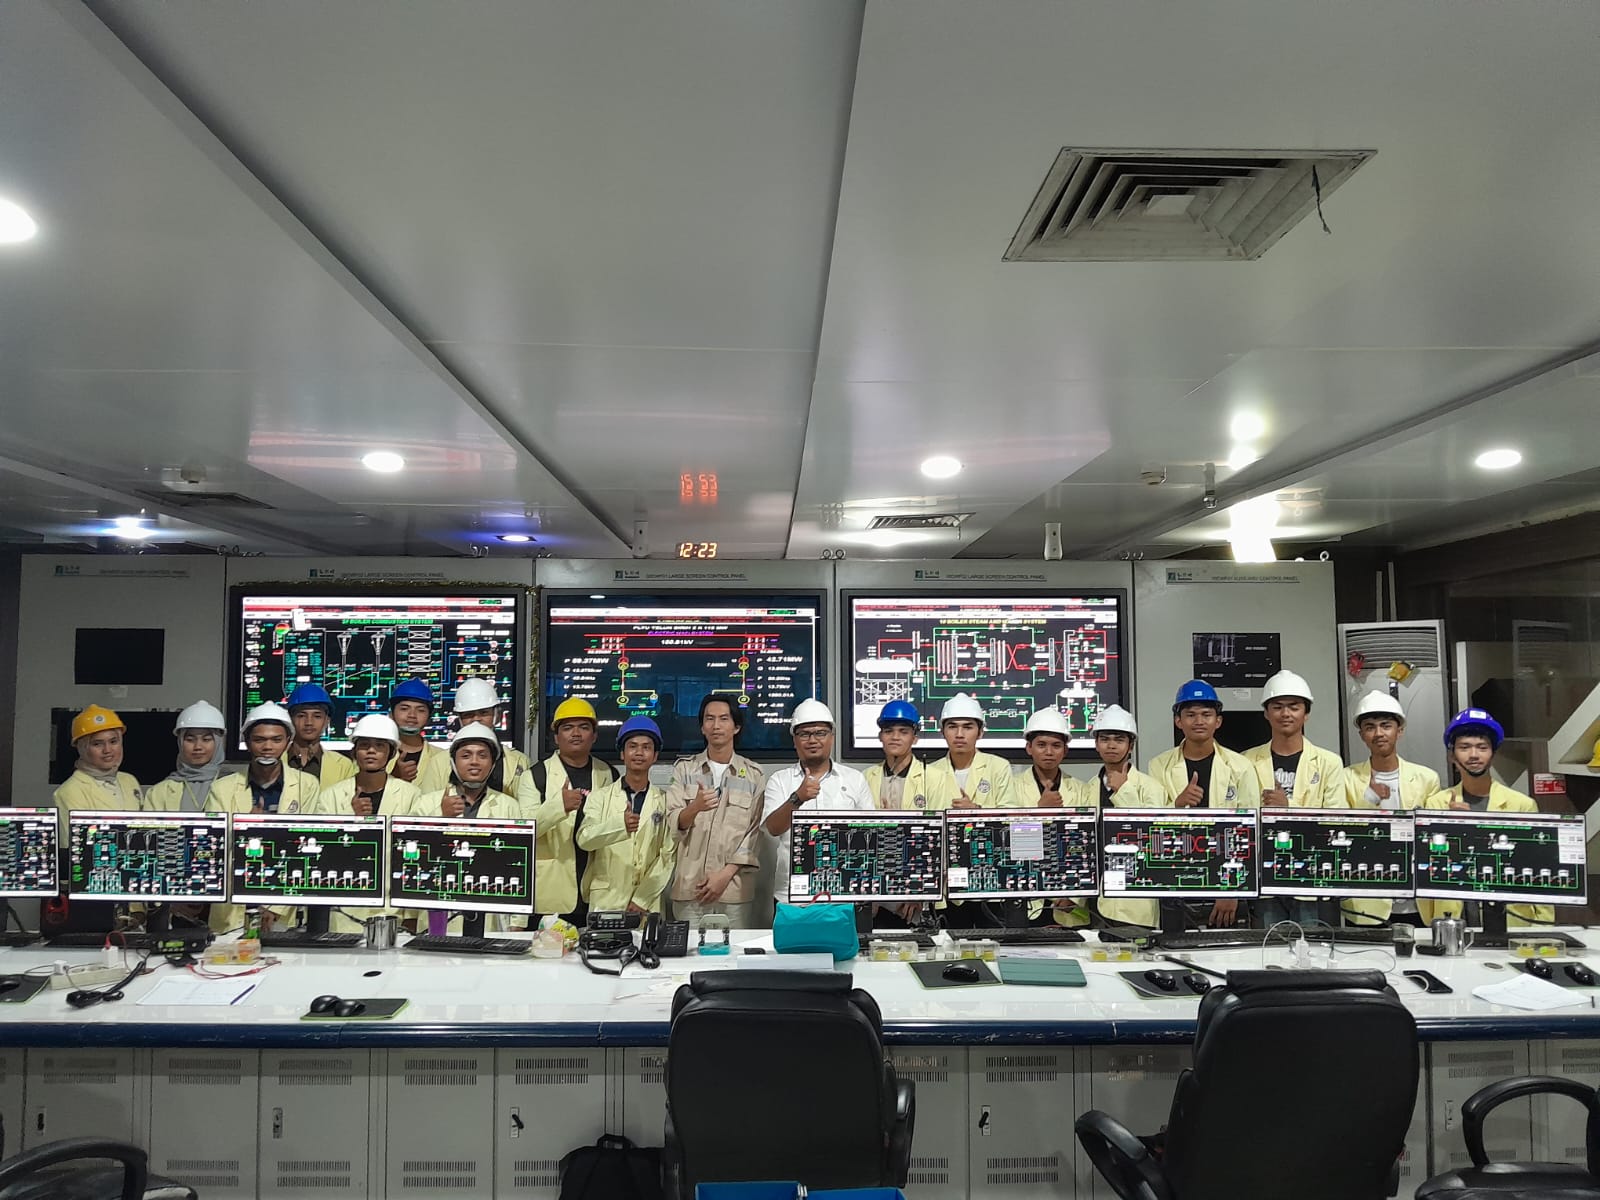 Kegiatan Studi Lapangan Mahasiswa Departemen Teknik Mesin UNP ke PLTU Teluk Sirih Padang